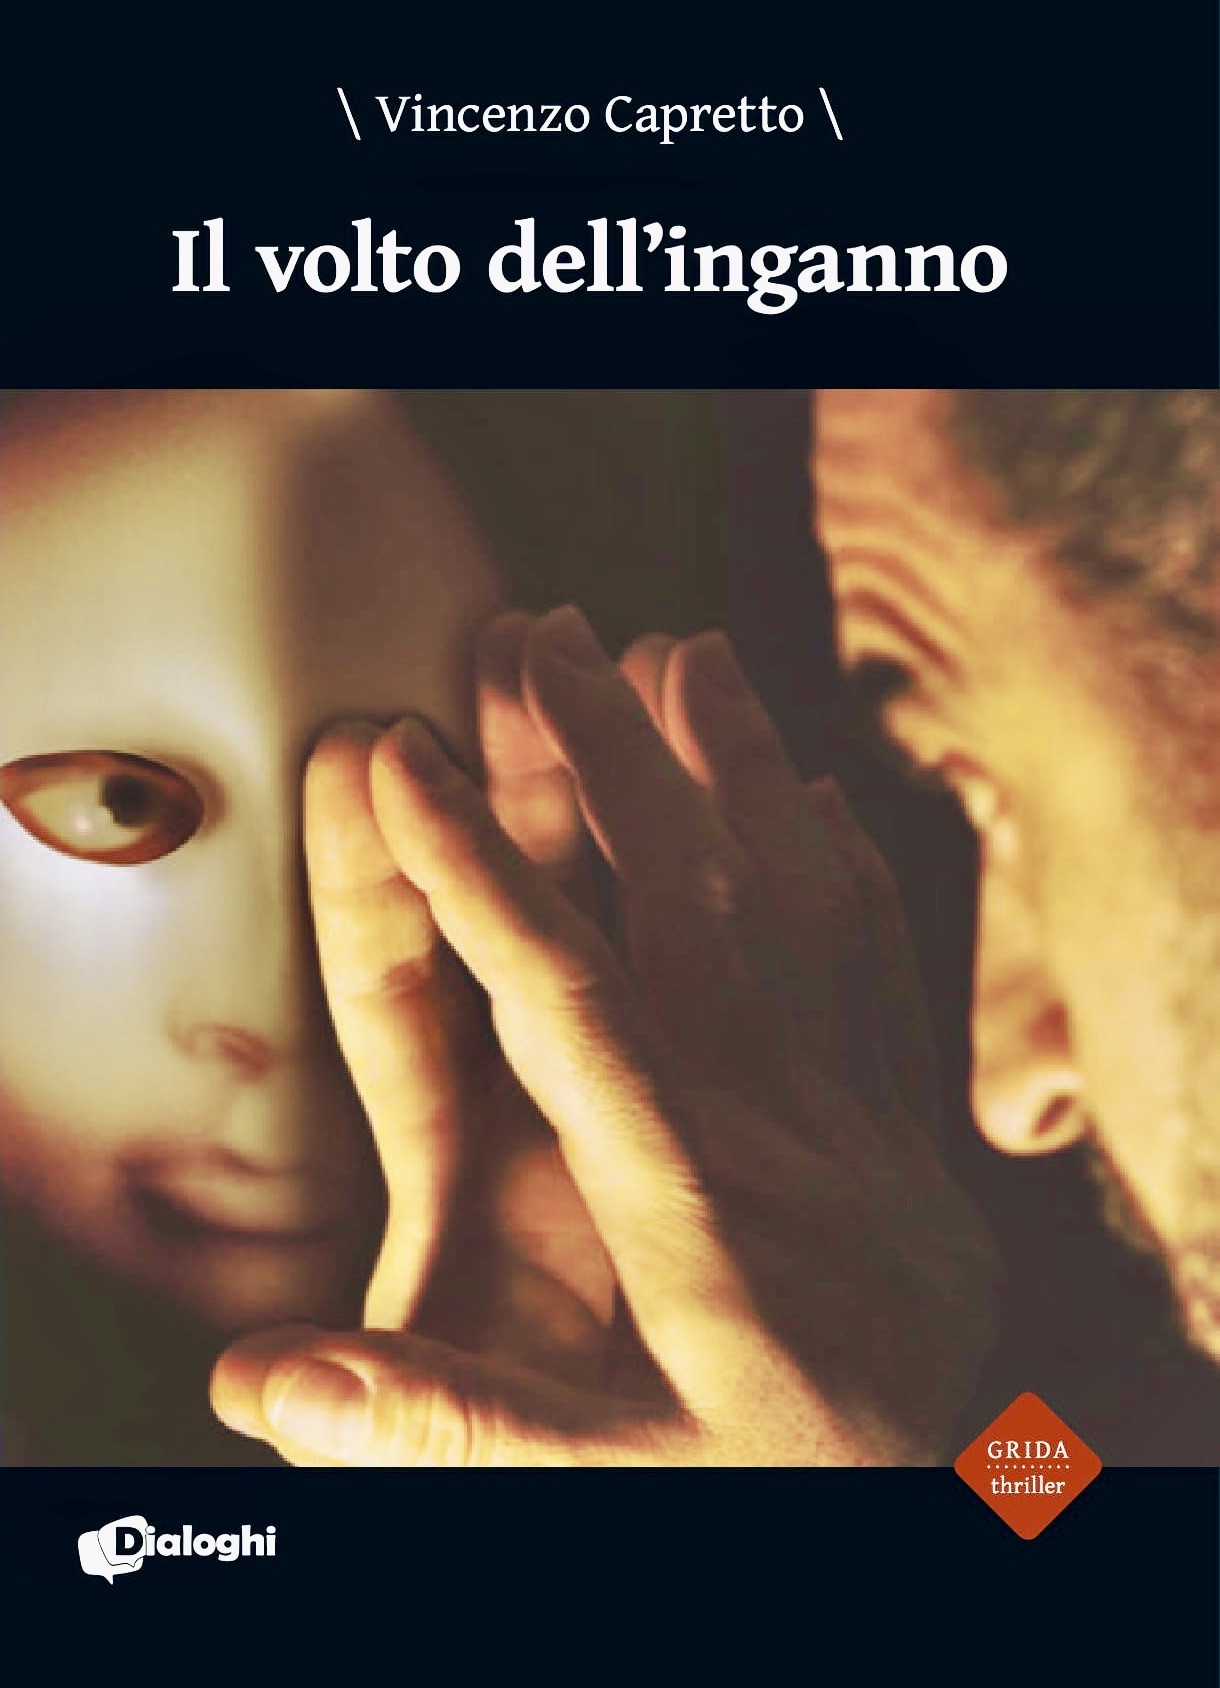 Vincenzo Capretto presenta il thriller psicologico “Il volto dell’inganno”